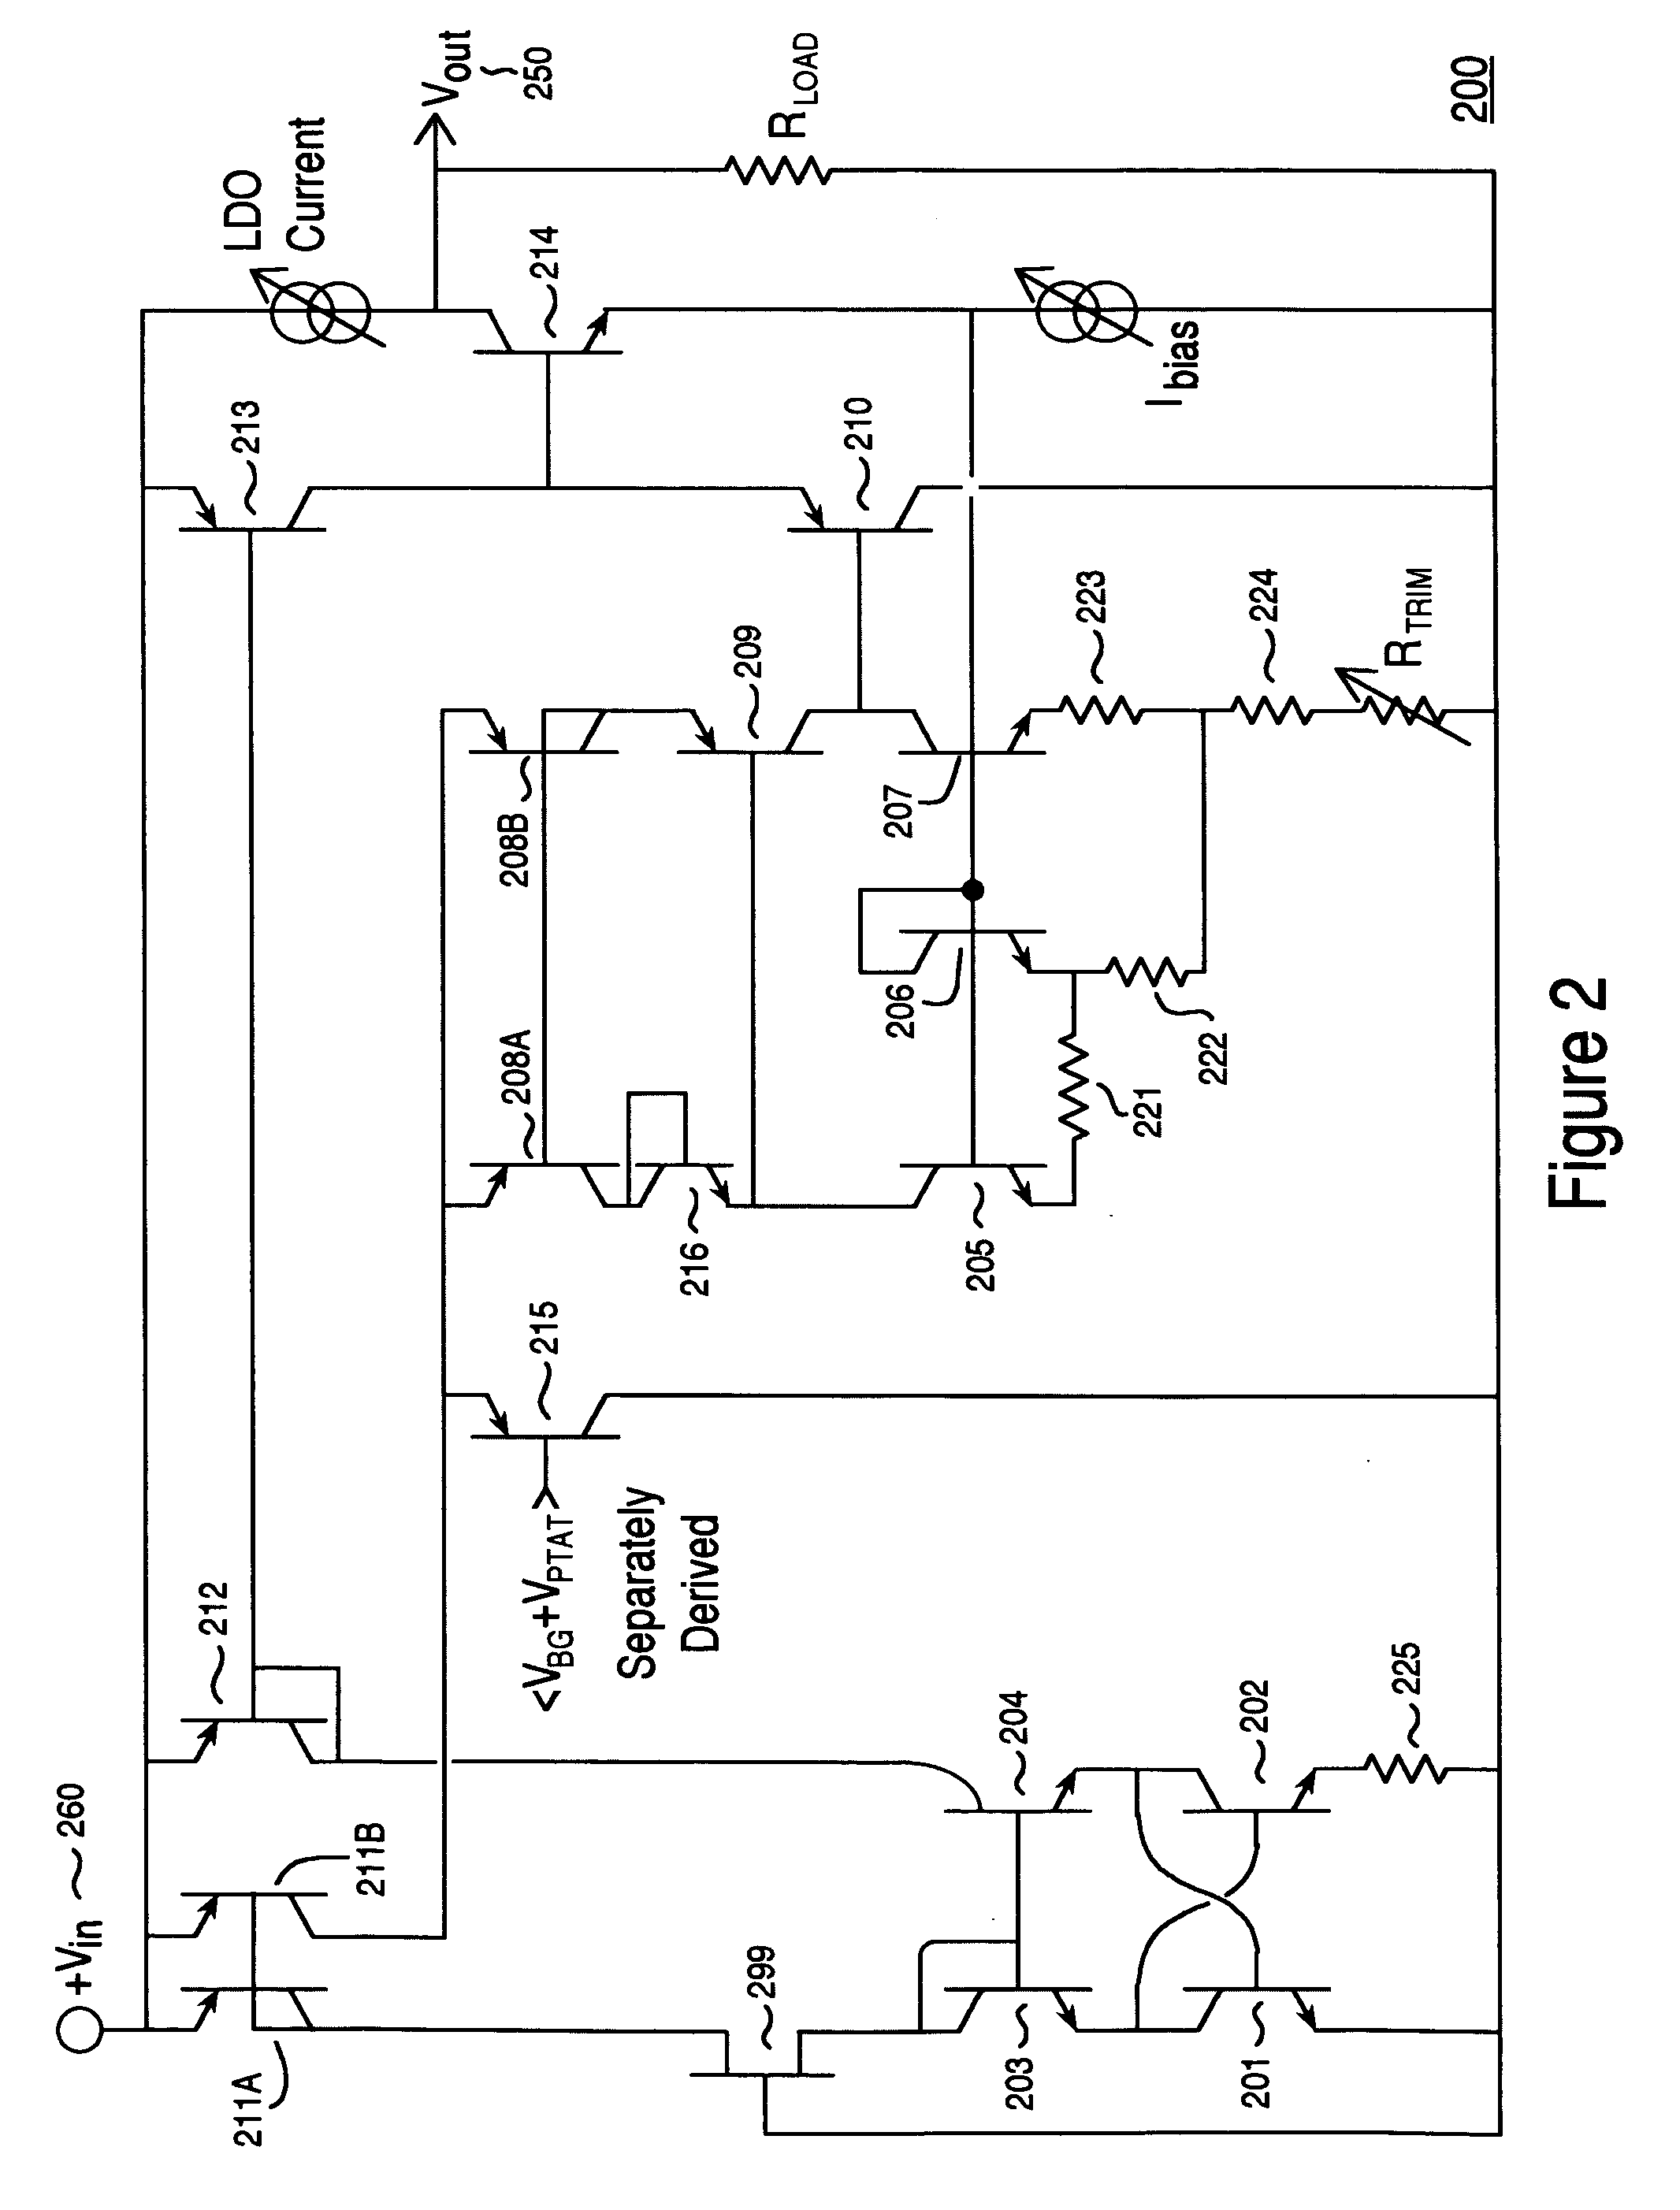 Low dropout voltage regulator